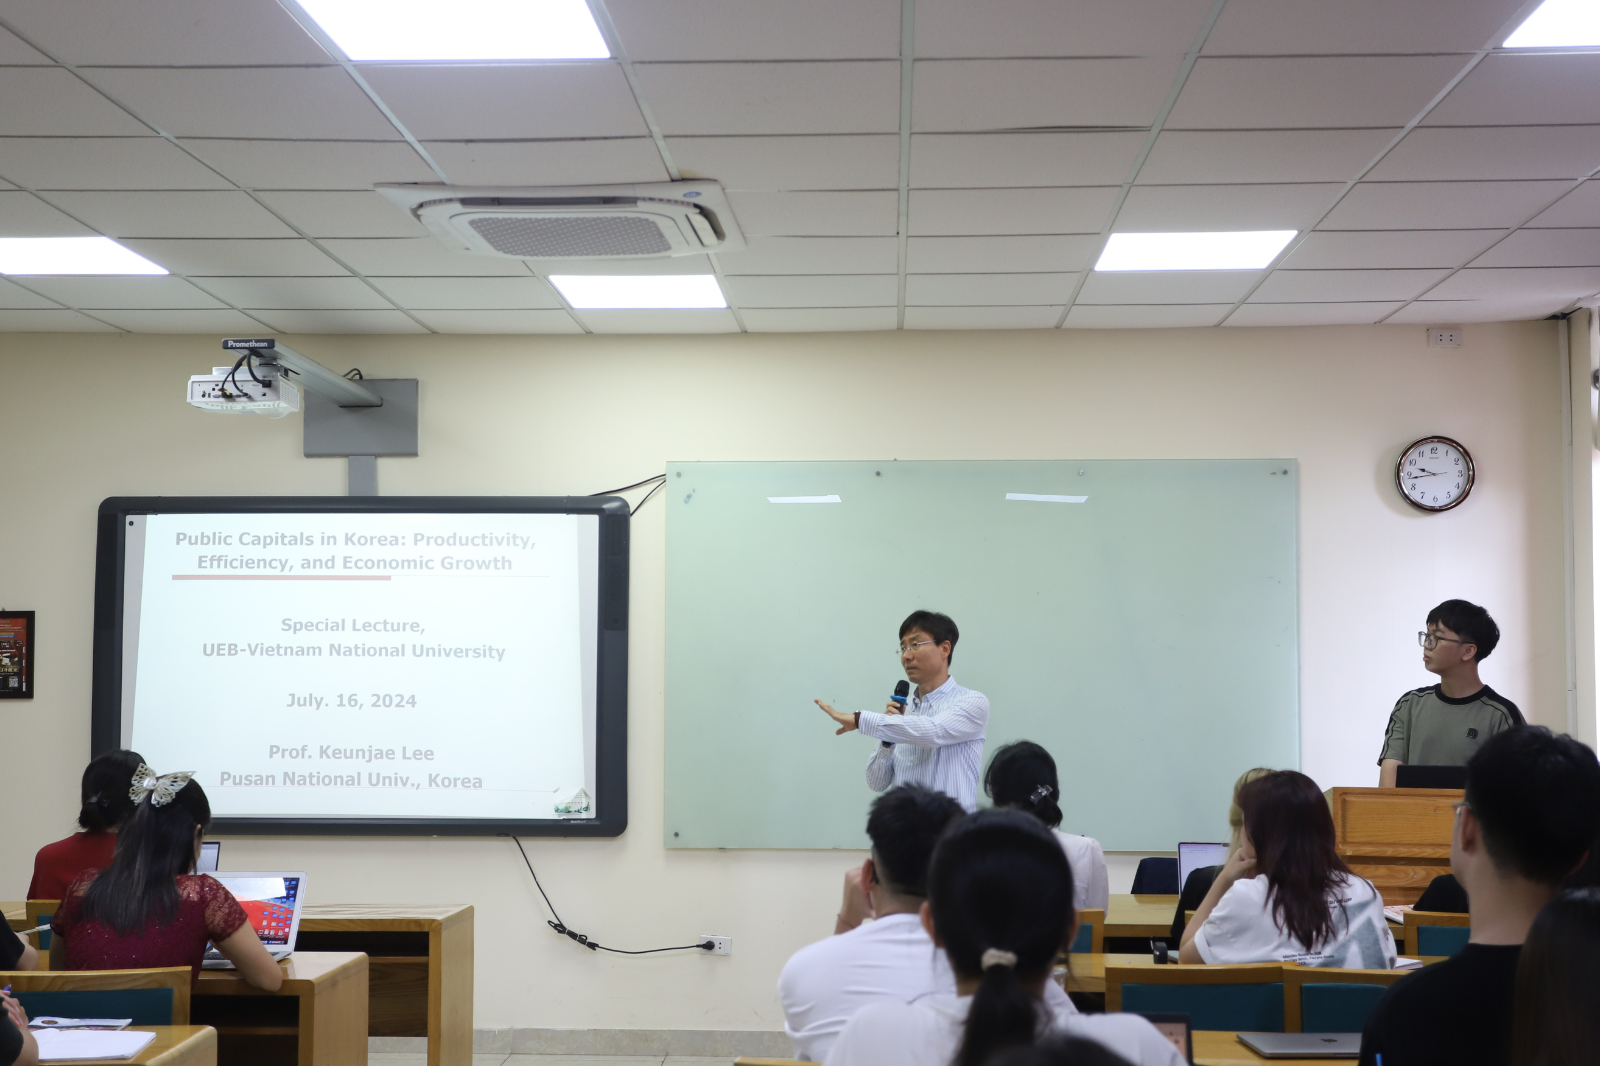 Thúc đẩy môi trường học quốc tế cho sinh viên UEB - SITE với lớp học của giáo sư Đại học Quốc gia Pusan, Hàn Quốc